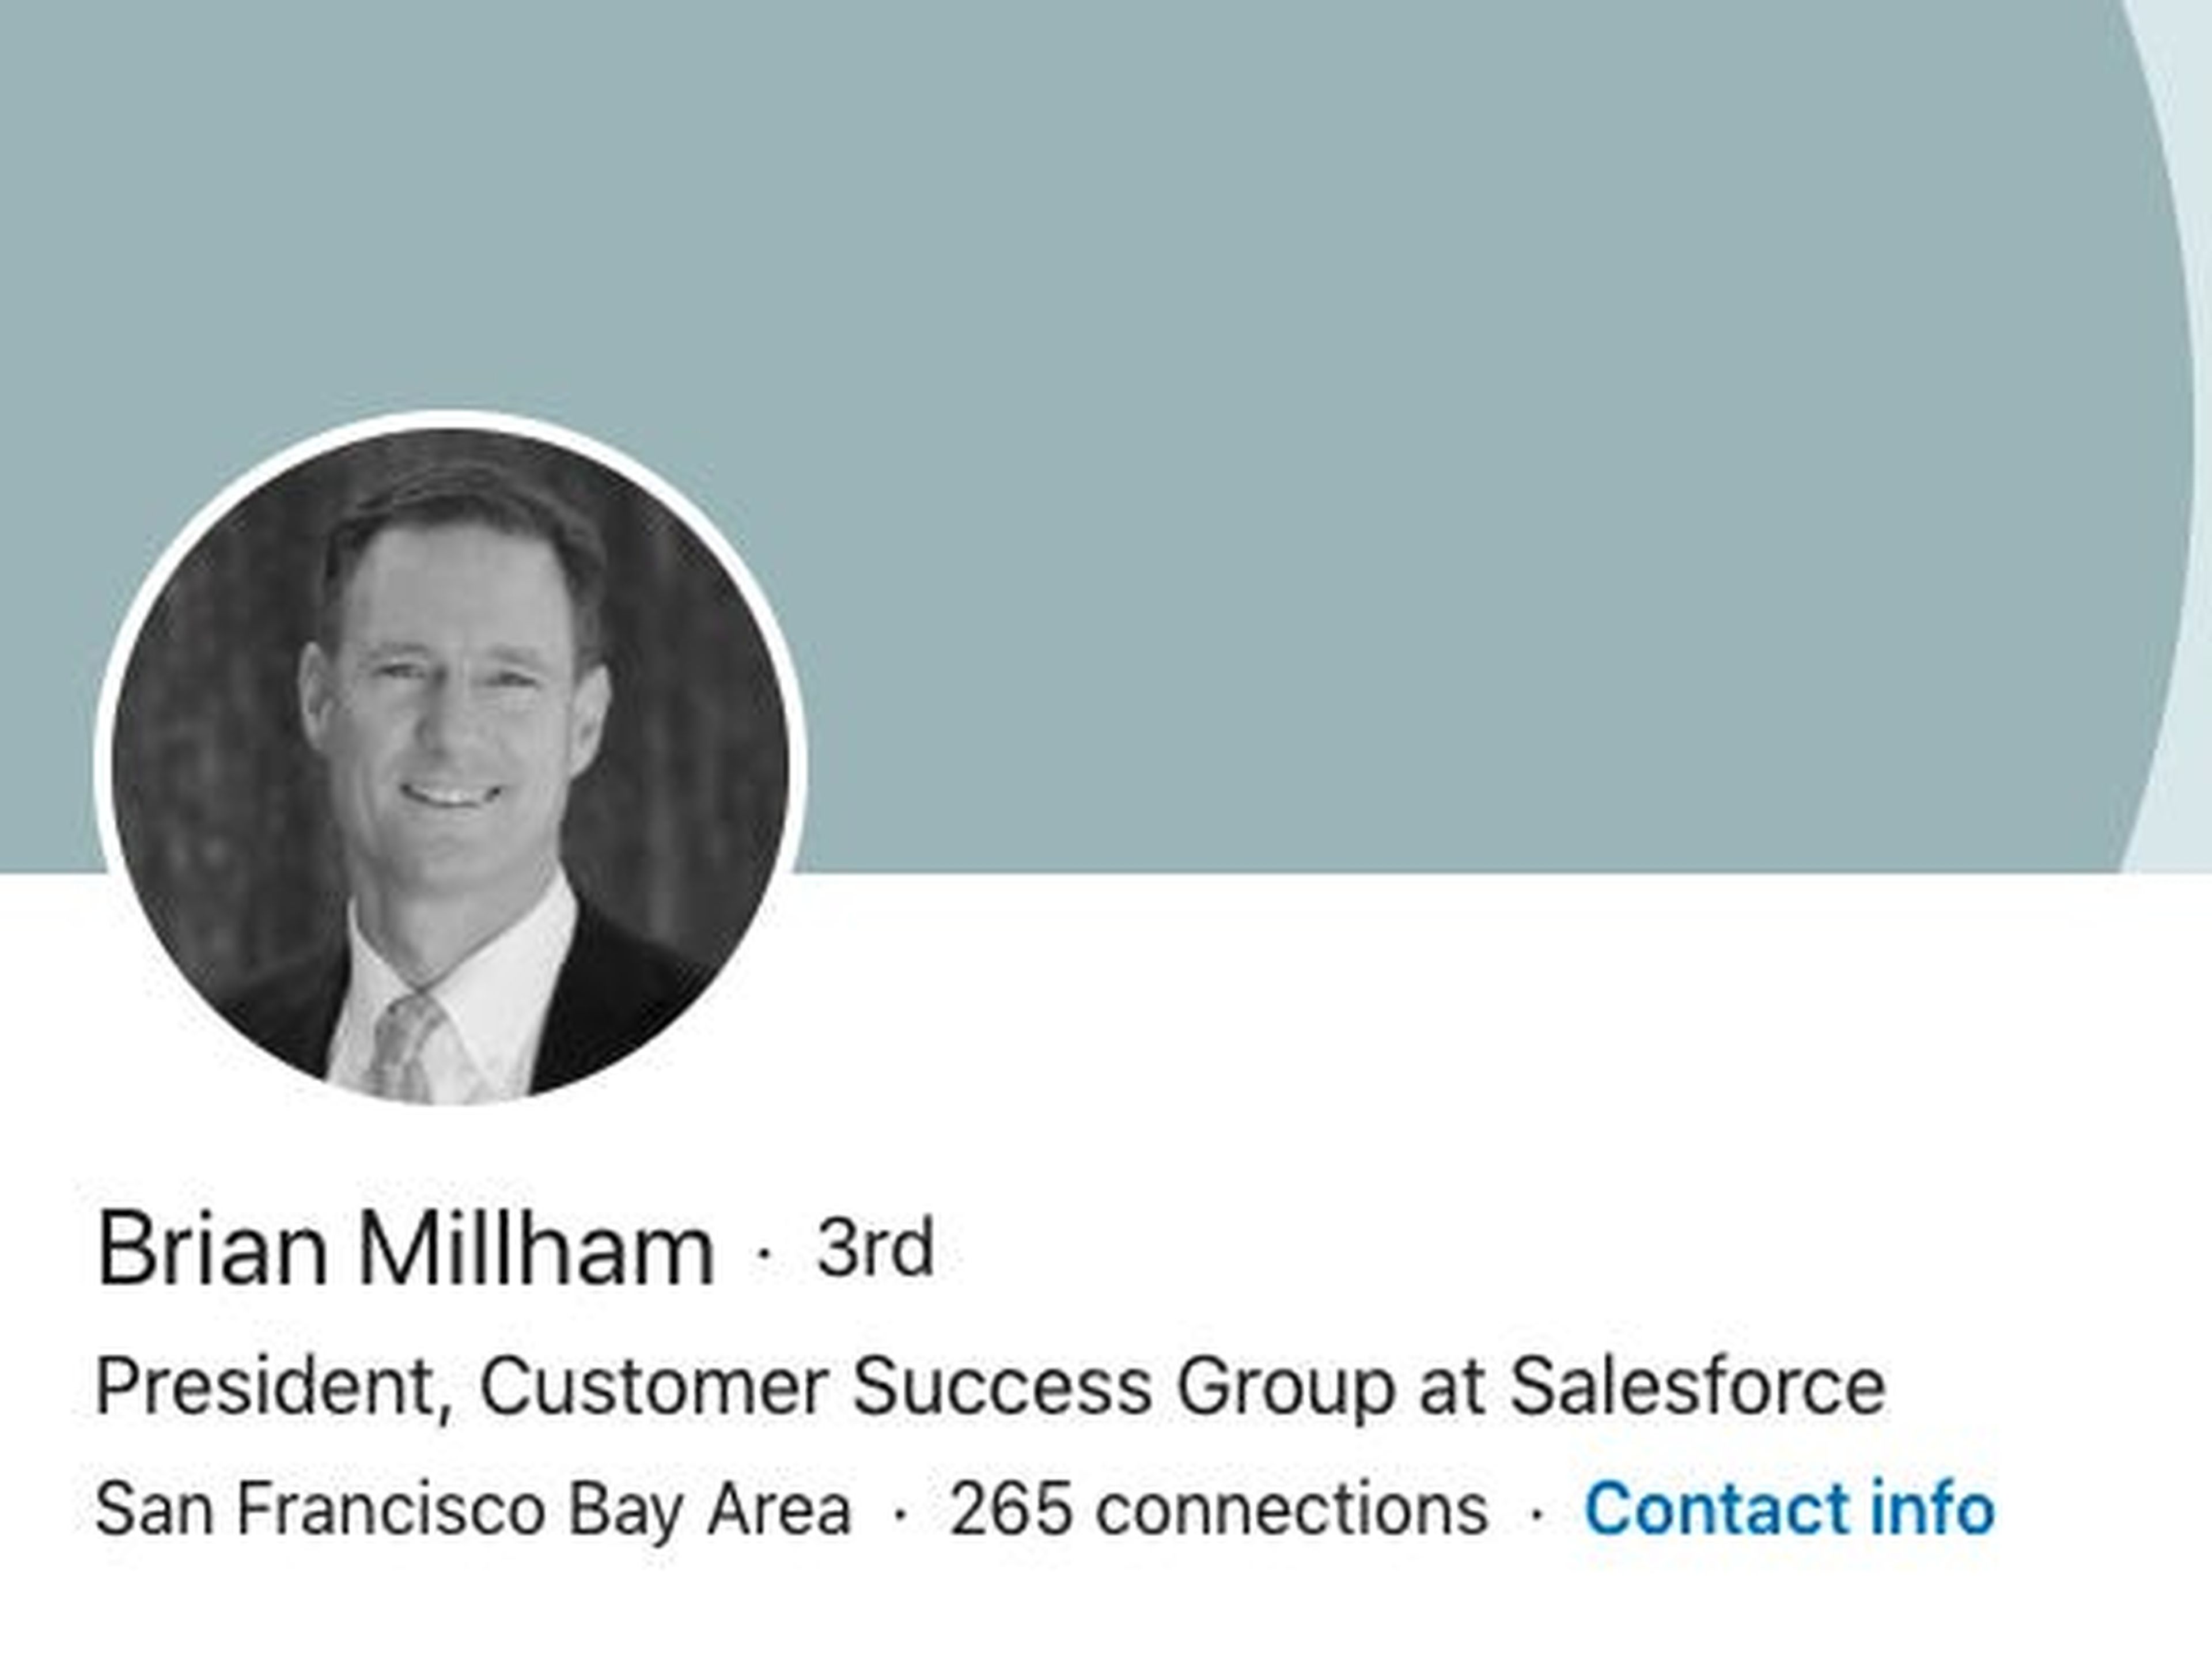 Brian Millham es el presidente del grupo de éxito del cliente de Salesforce.